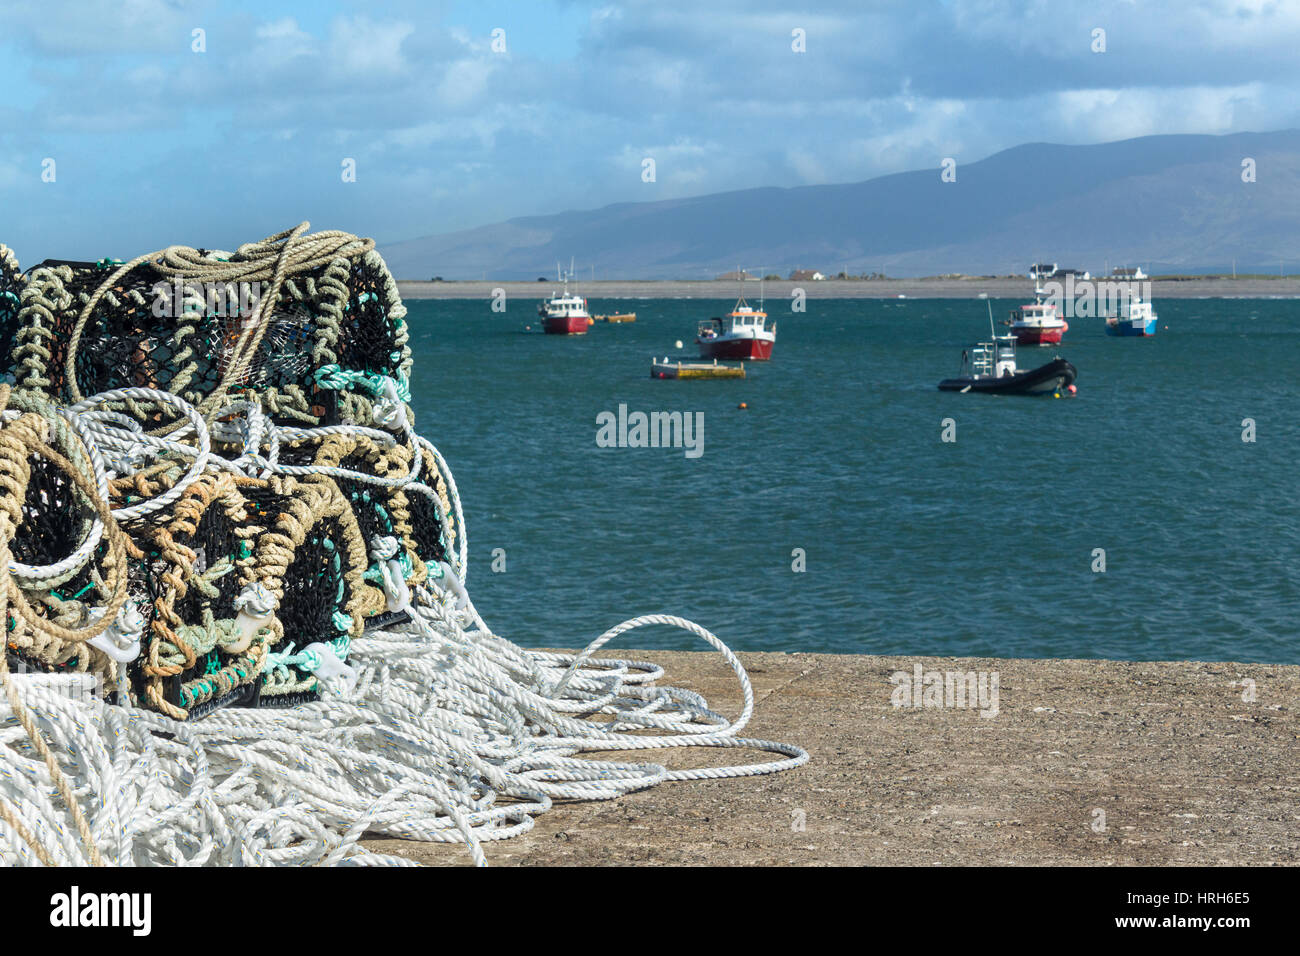 Lobster and Crab Fishing near the Maharees, Dingle Peninsula, County Kerry, Ireland Stock Photo